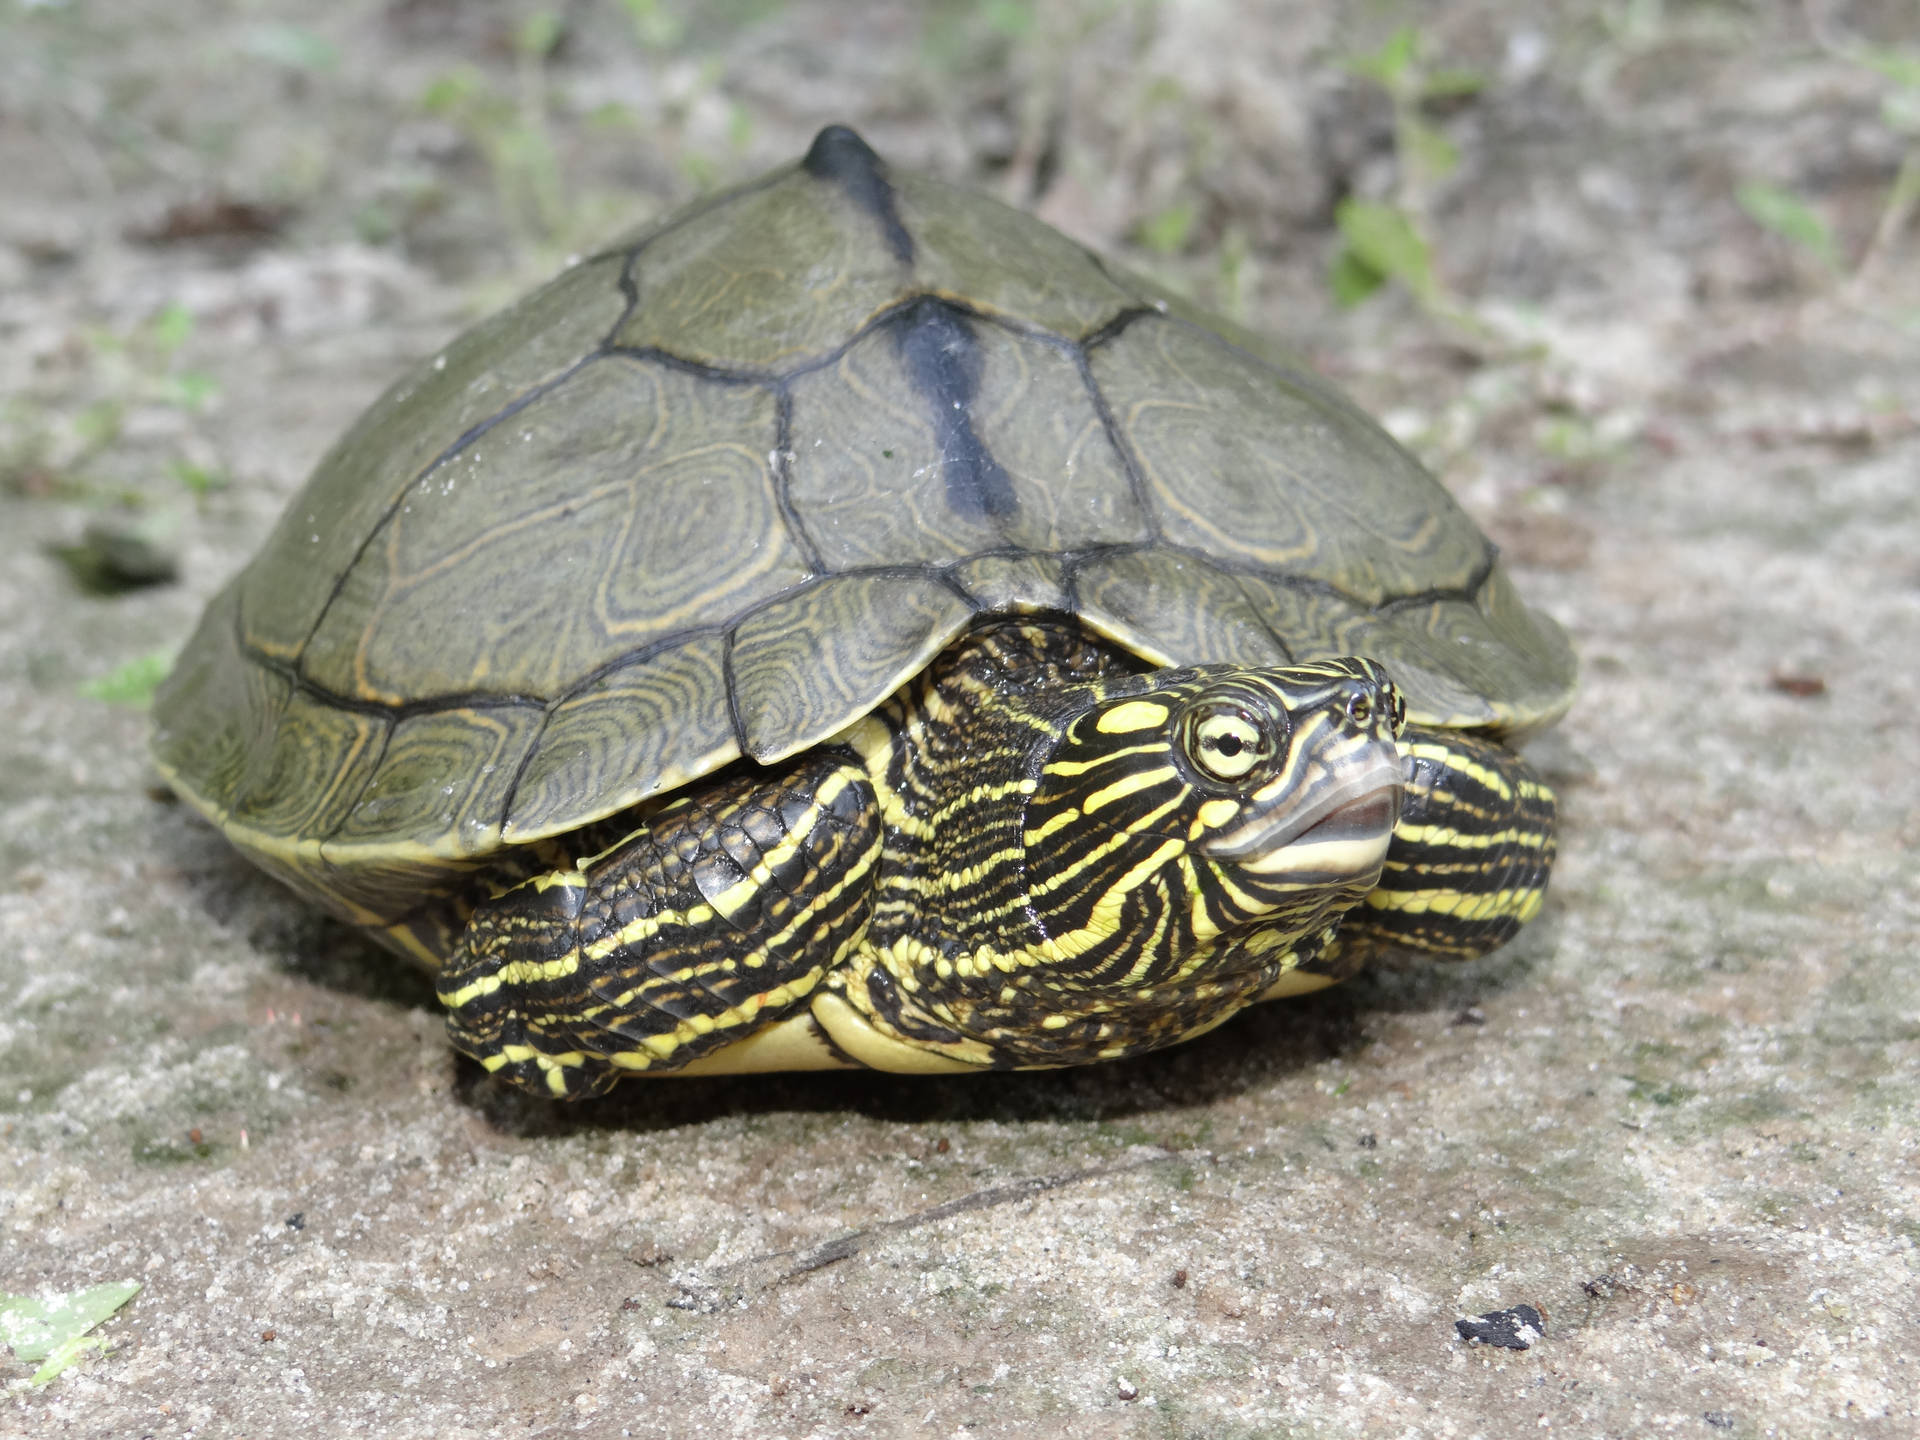 Sabinekartasköldpadda I Louisiana. Wallpaper